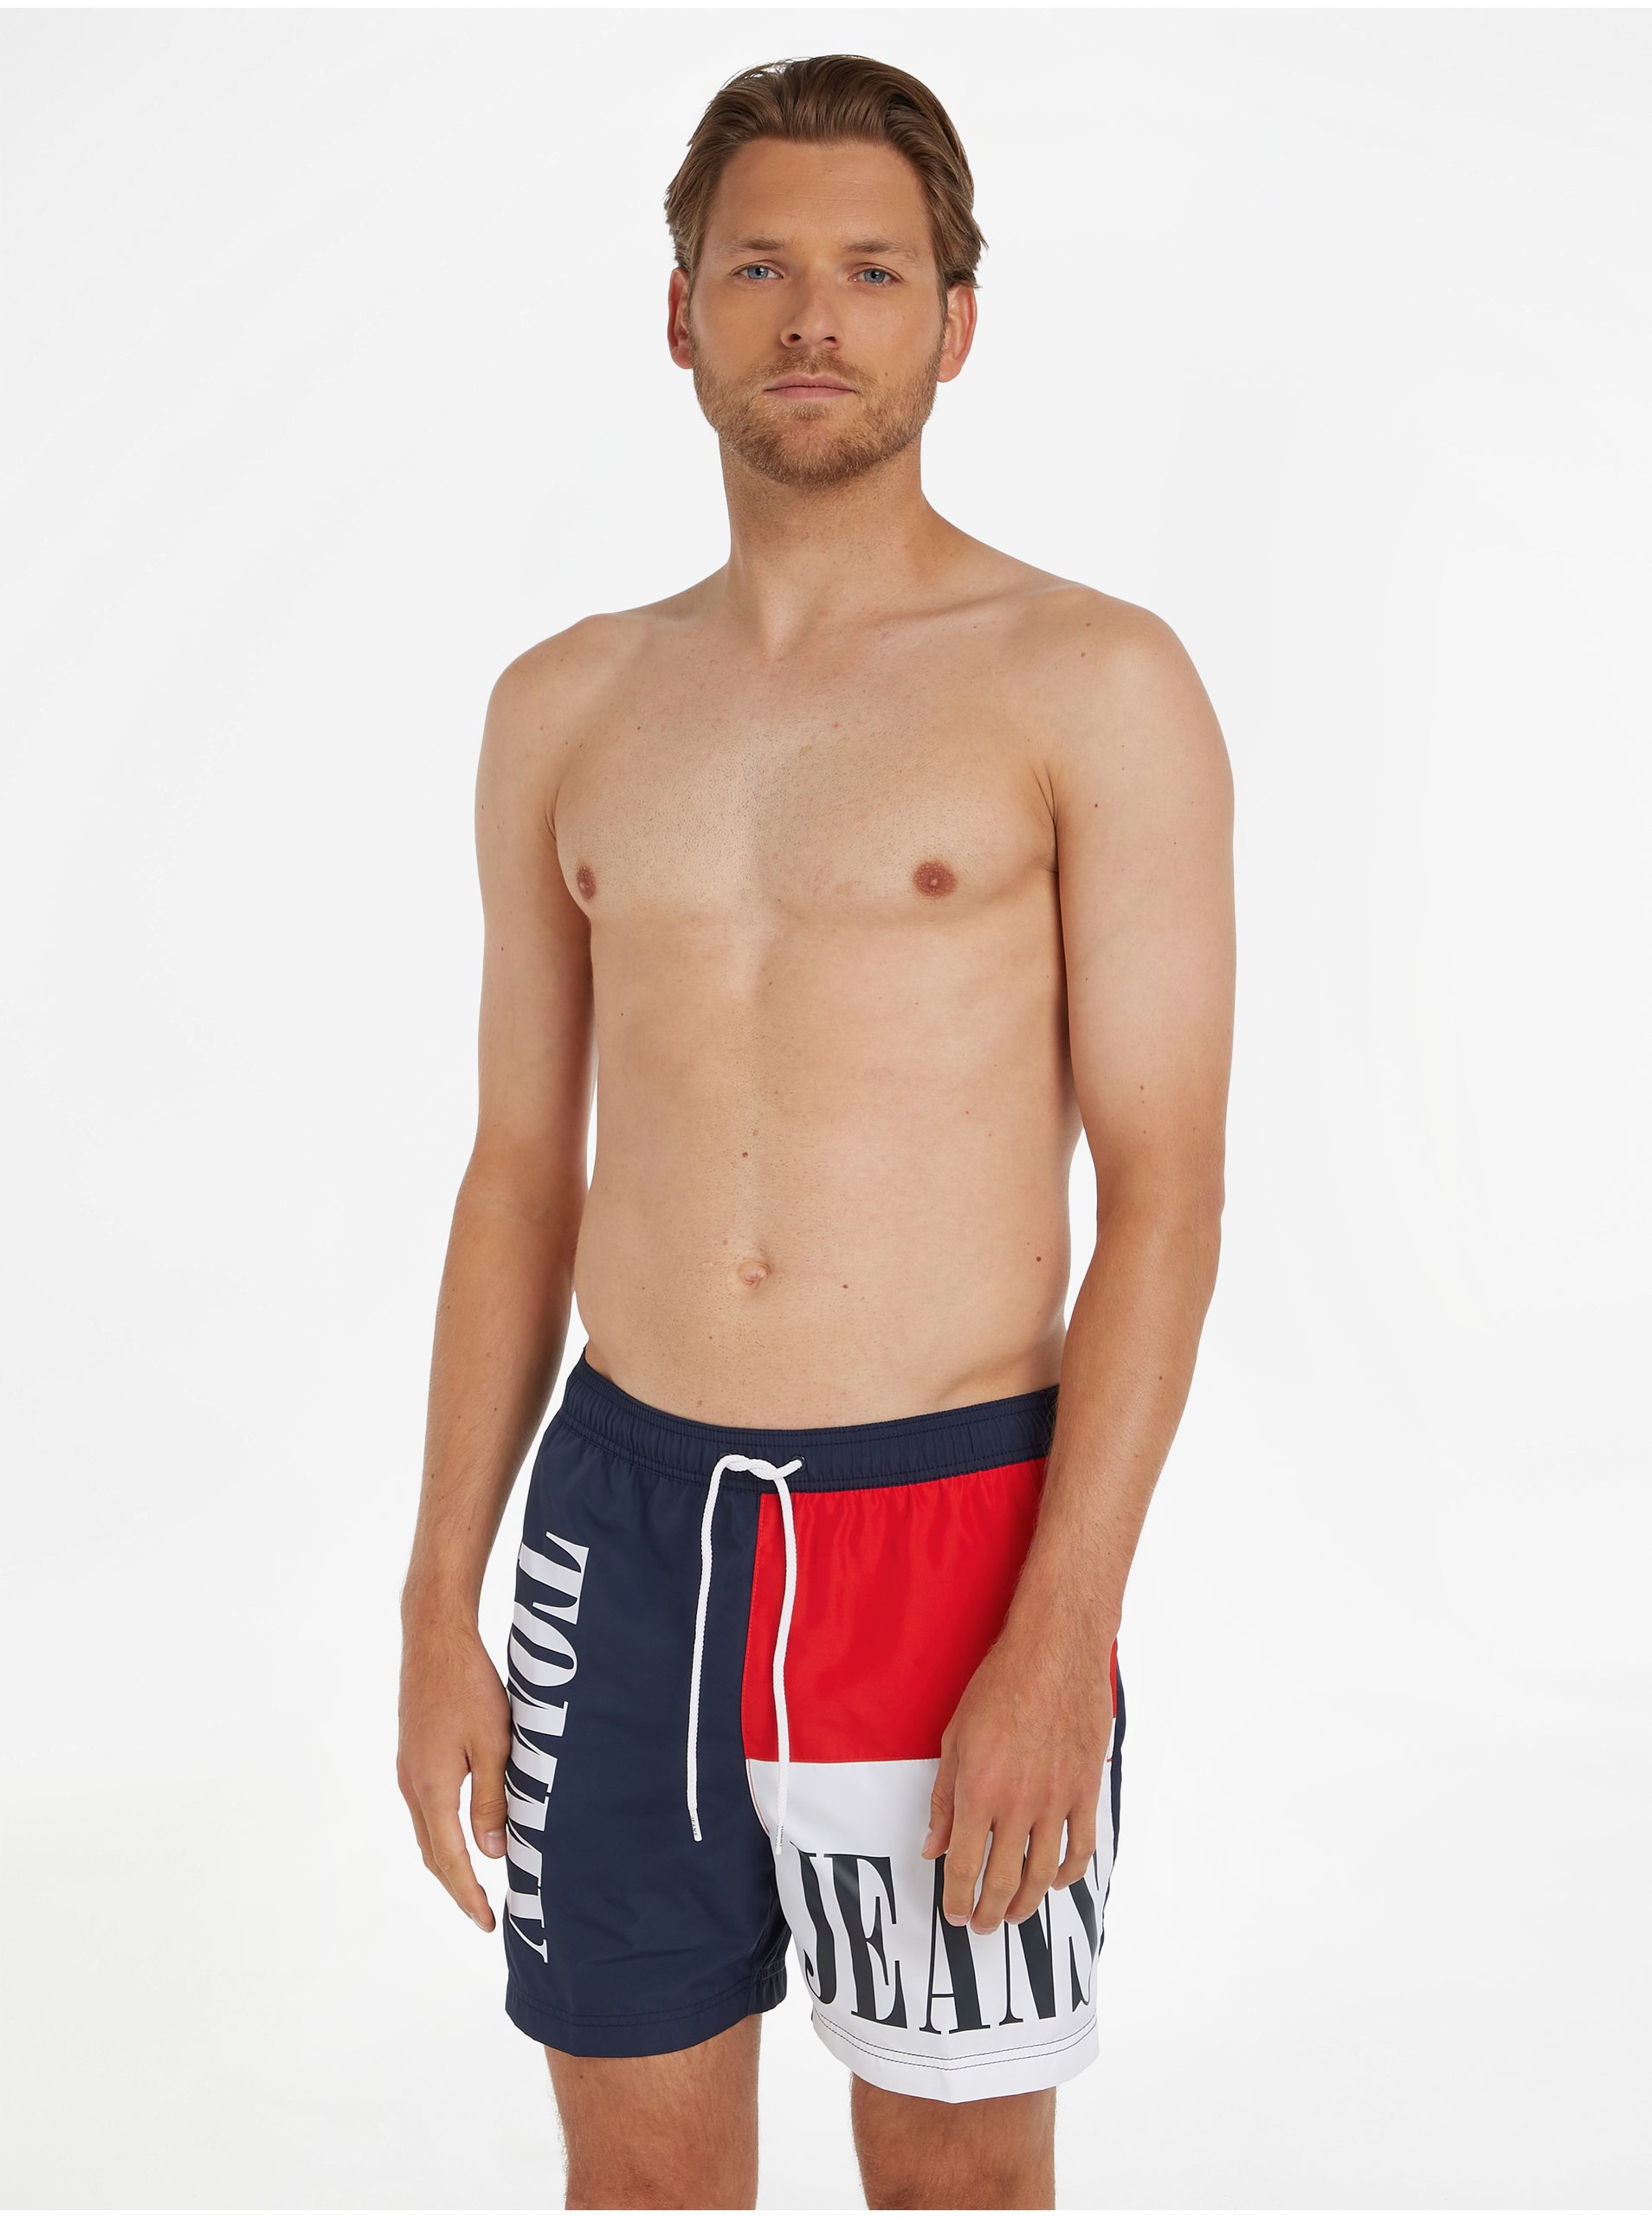 E-shop Plavky pre mužov Tommy Hilfiger Underwear - tmavomodrá, červená, biela